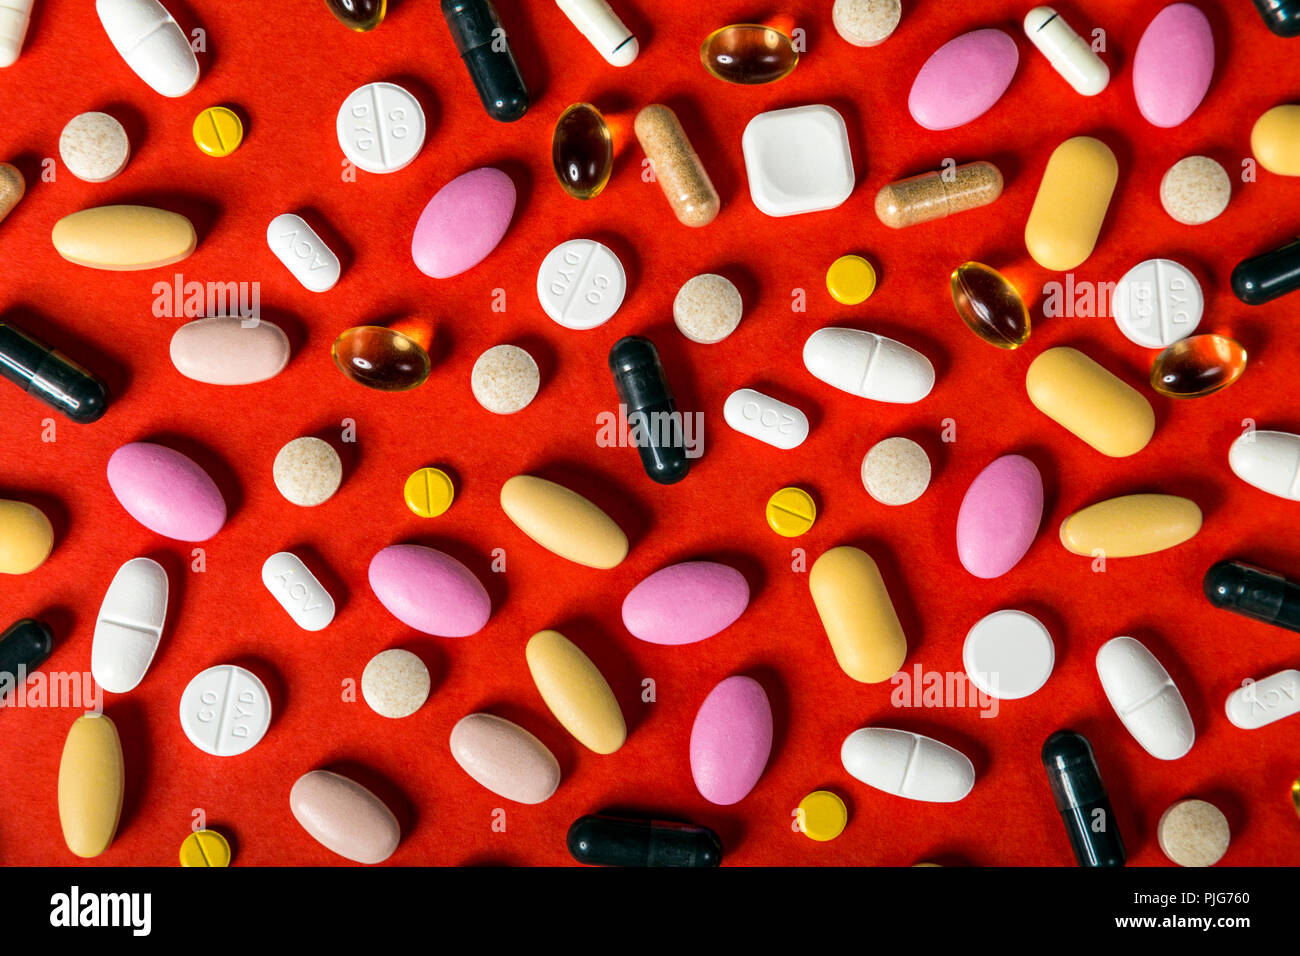 Distribuidos de pastillas, cápsulas y tabletas contra el fondo rojo, suplementos, medicamentos, asistencia sanitaria Foto de stock